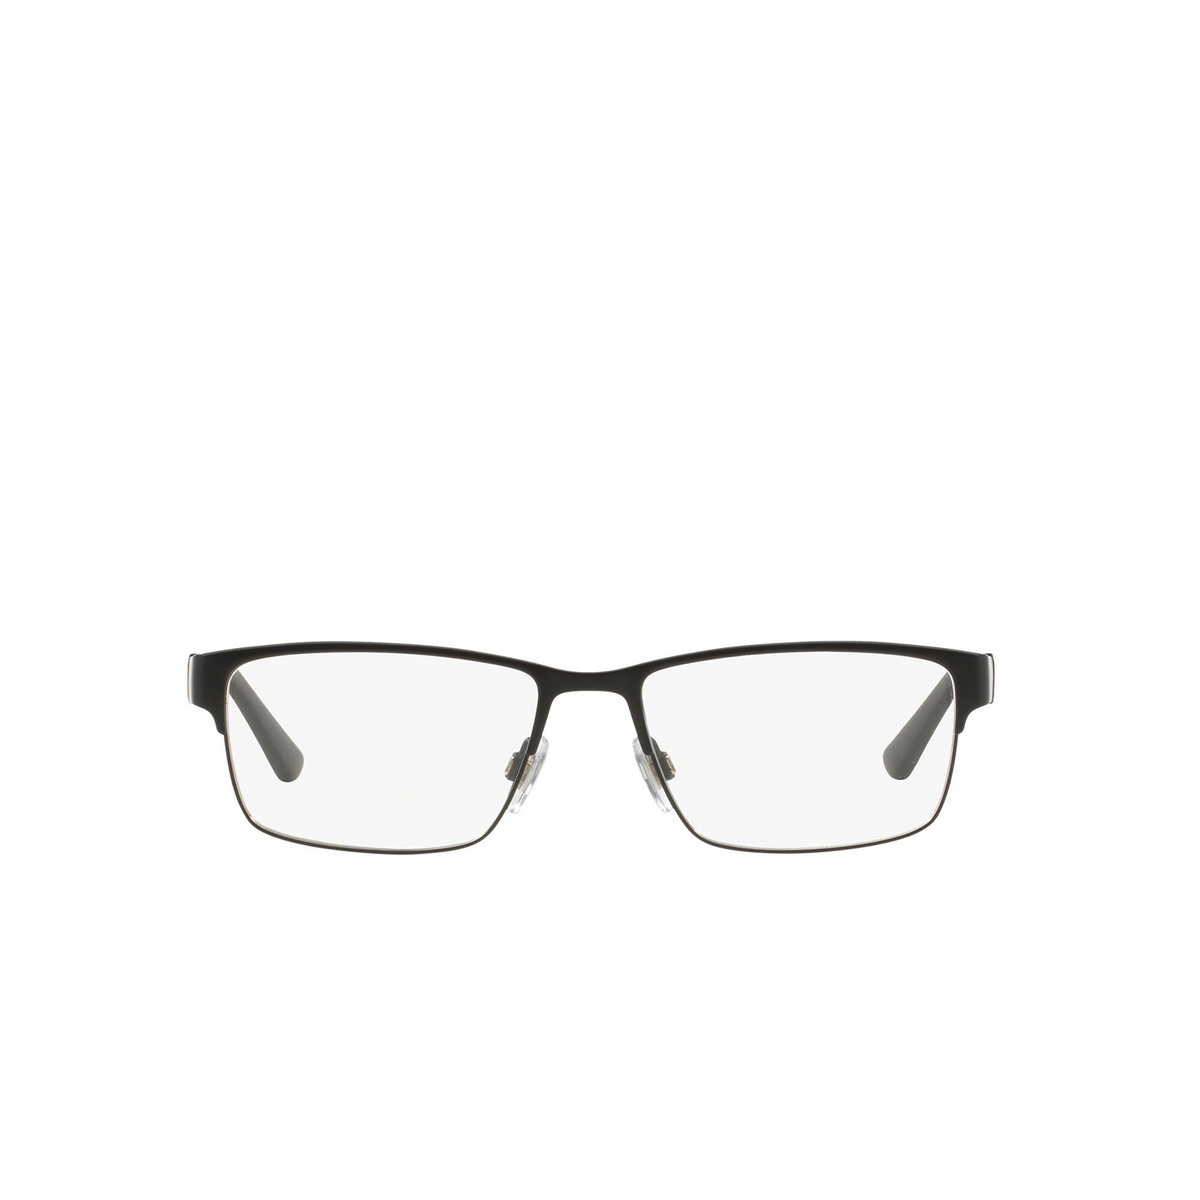 Polo Ralph Lauren® Rectangle Eyeglasses: PH1147 color Matte Black 9038 - front view.